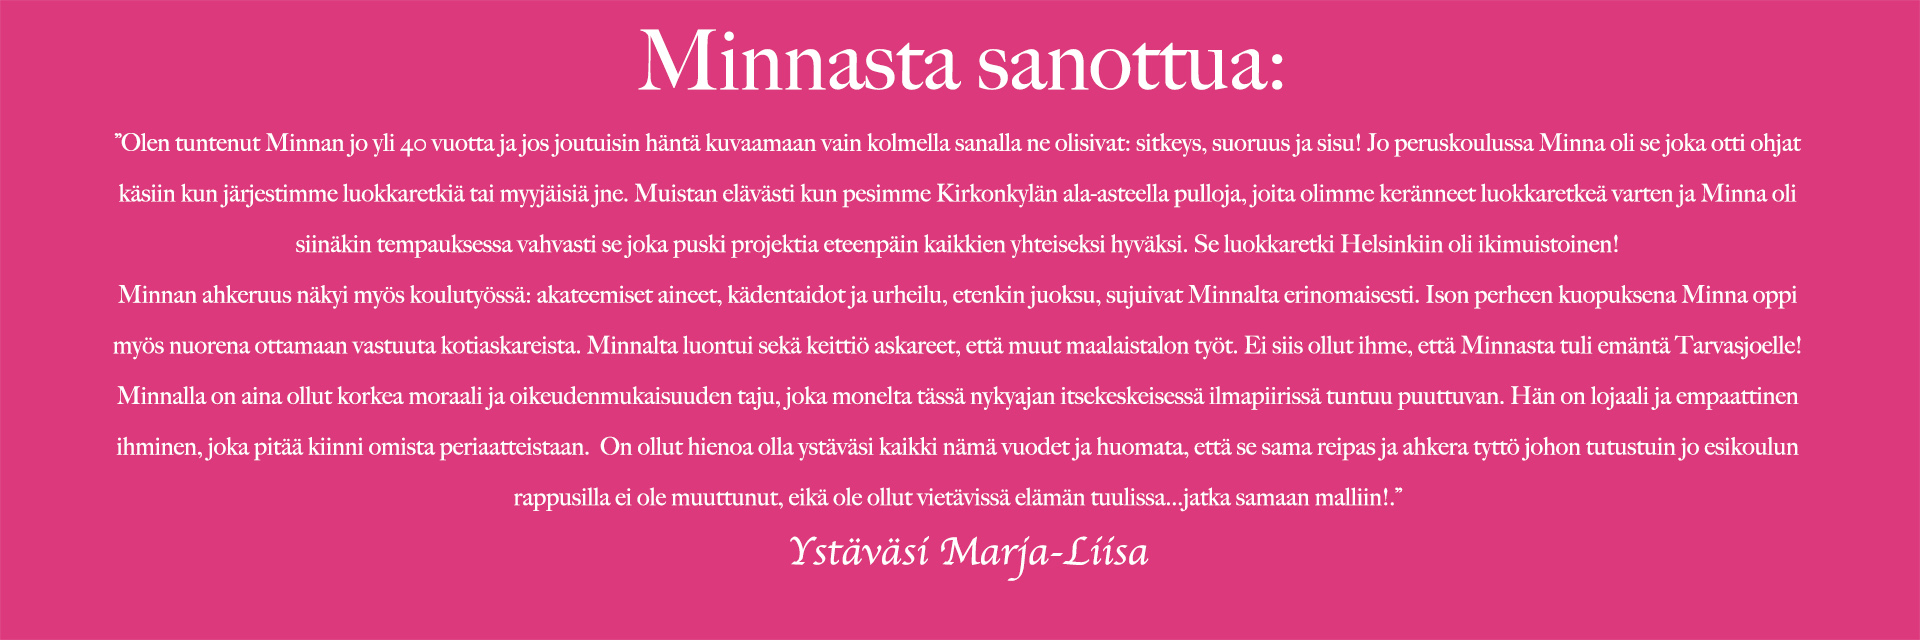 Marja-Liisa kertoo ystävästään Minnasta